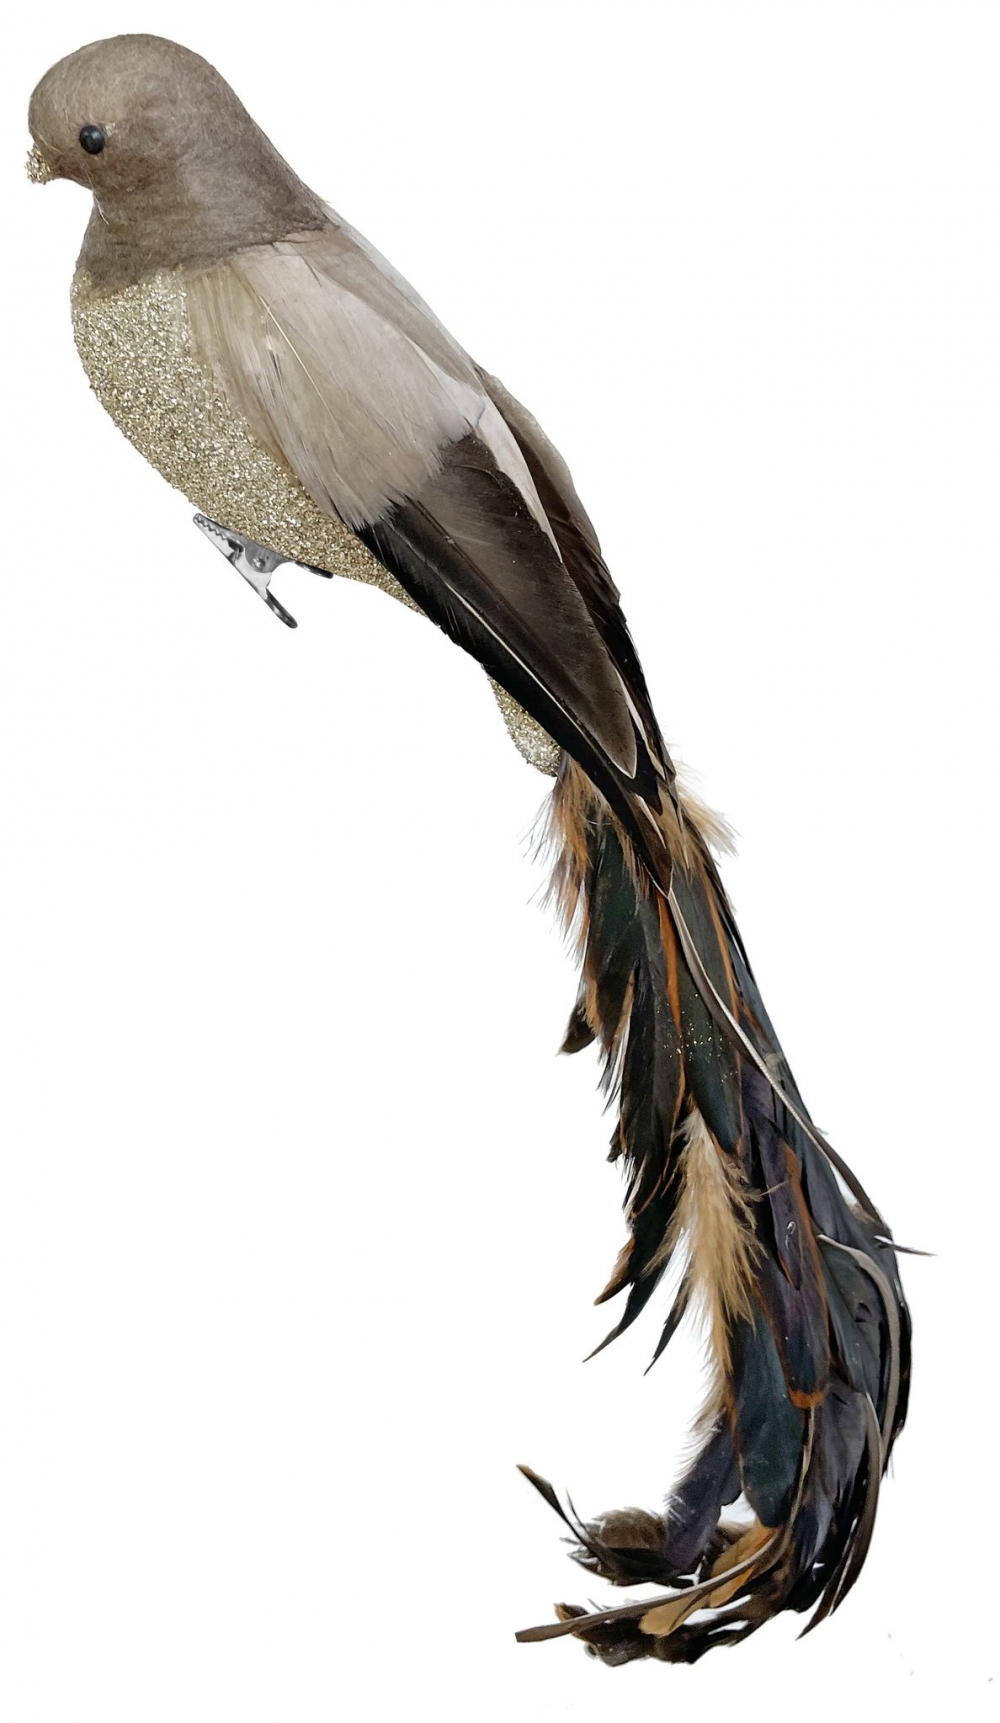 Dekorativ fugl med fjær på klype.
Farger: Grå/glitter/brun
Selges en og en.
Mål: 47cm